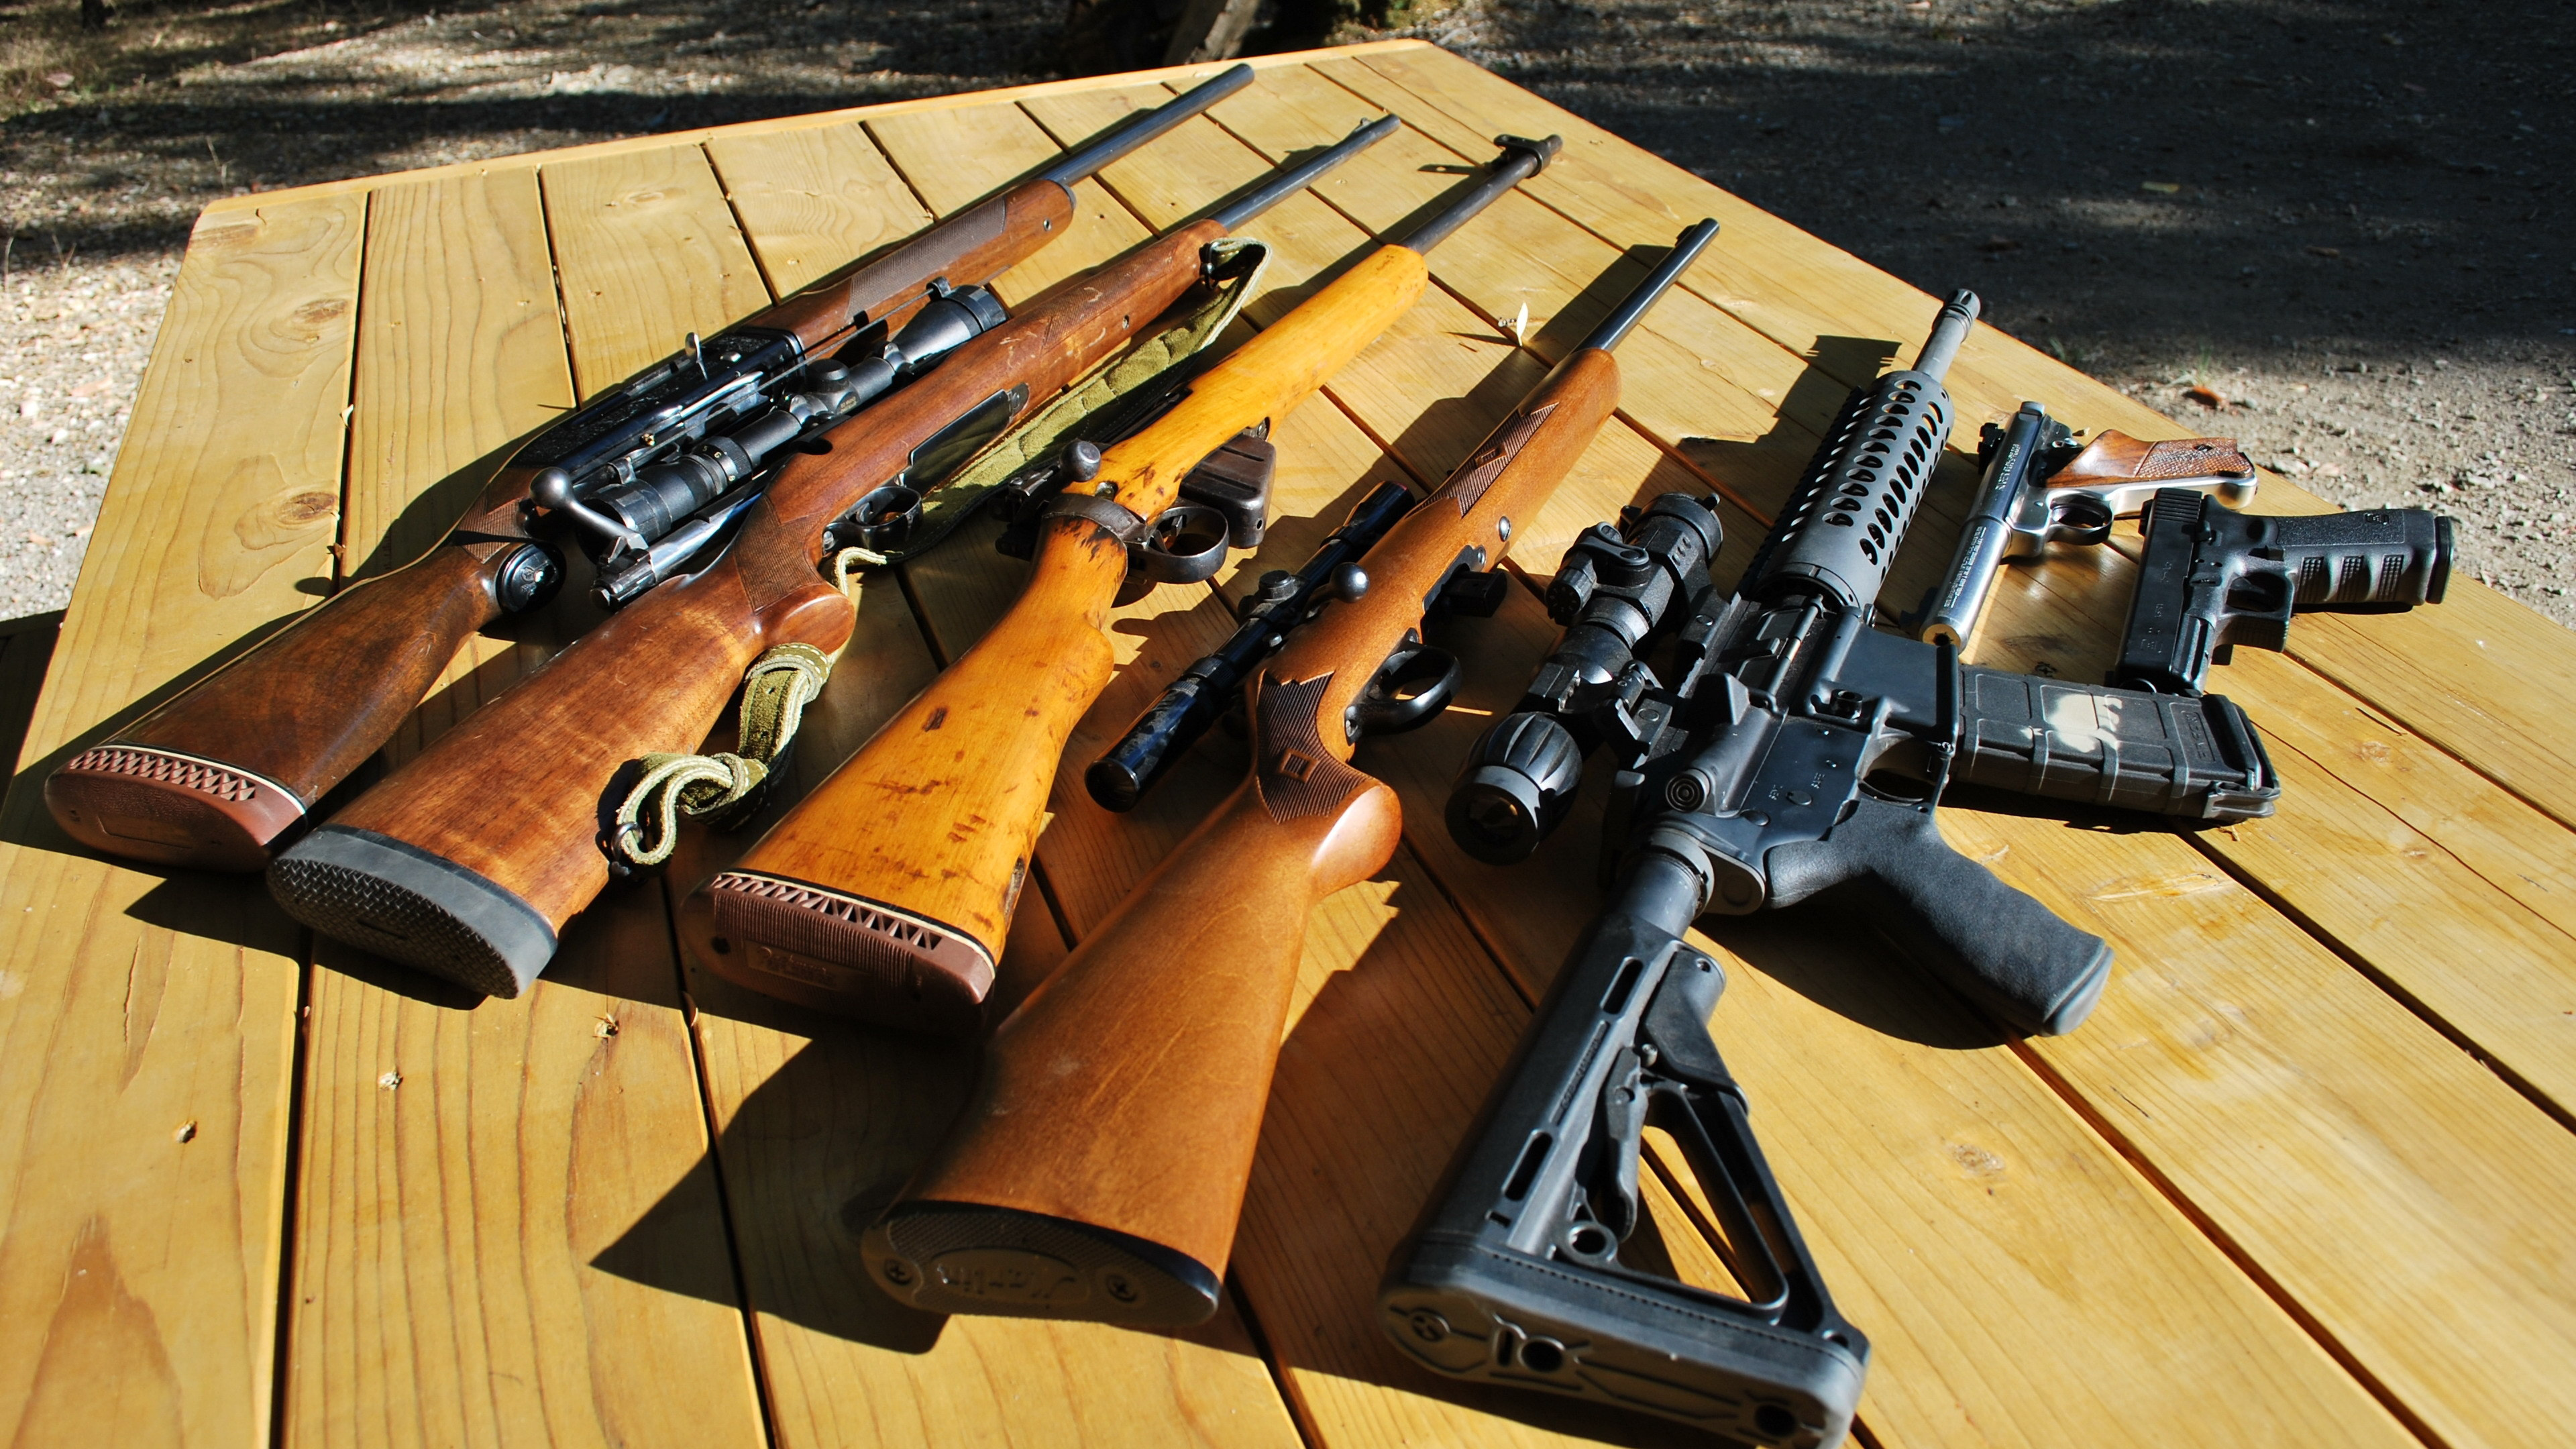 Arma, Pistola de Aire, Pistola de Airsoft, Rifle, Arma Civil. Wallpaper in 3840x2160 Resolution